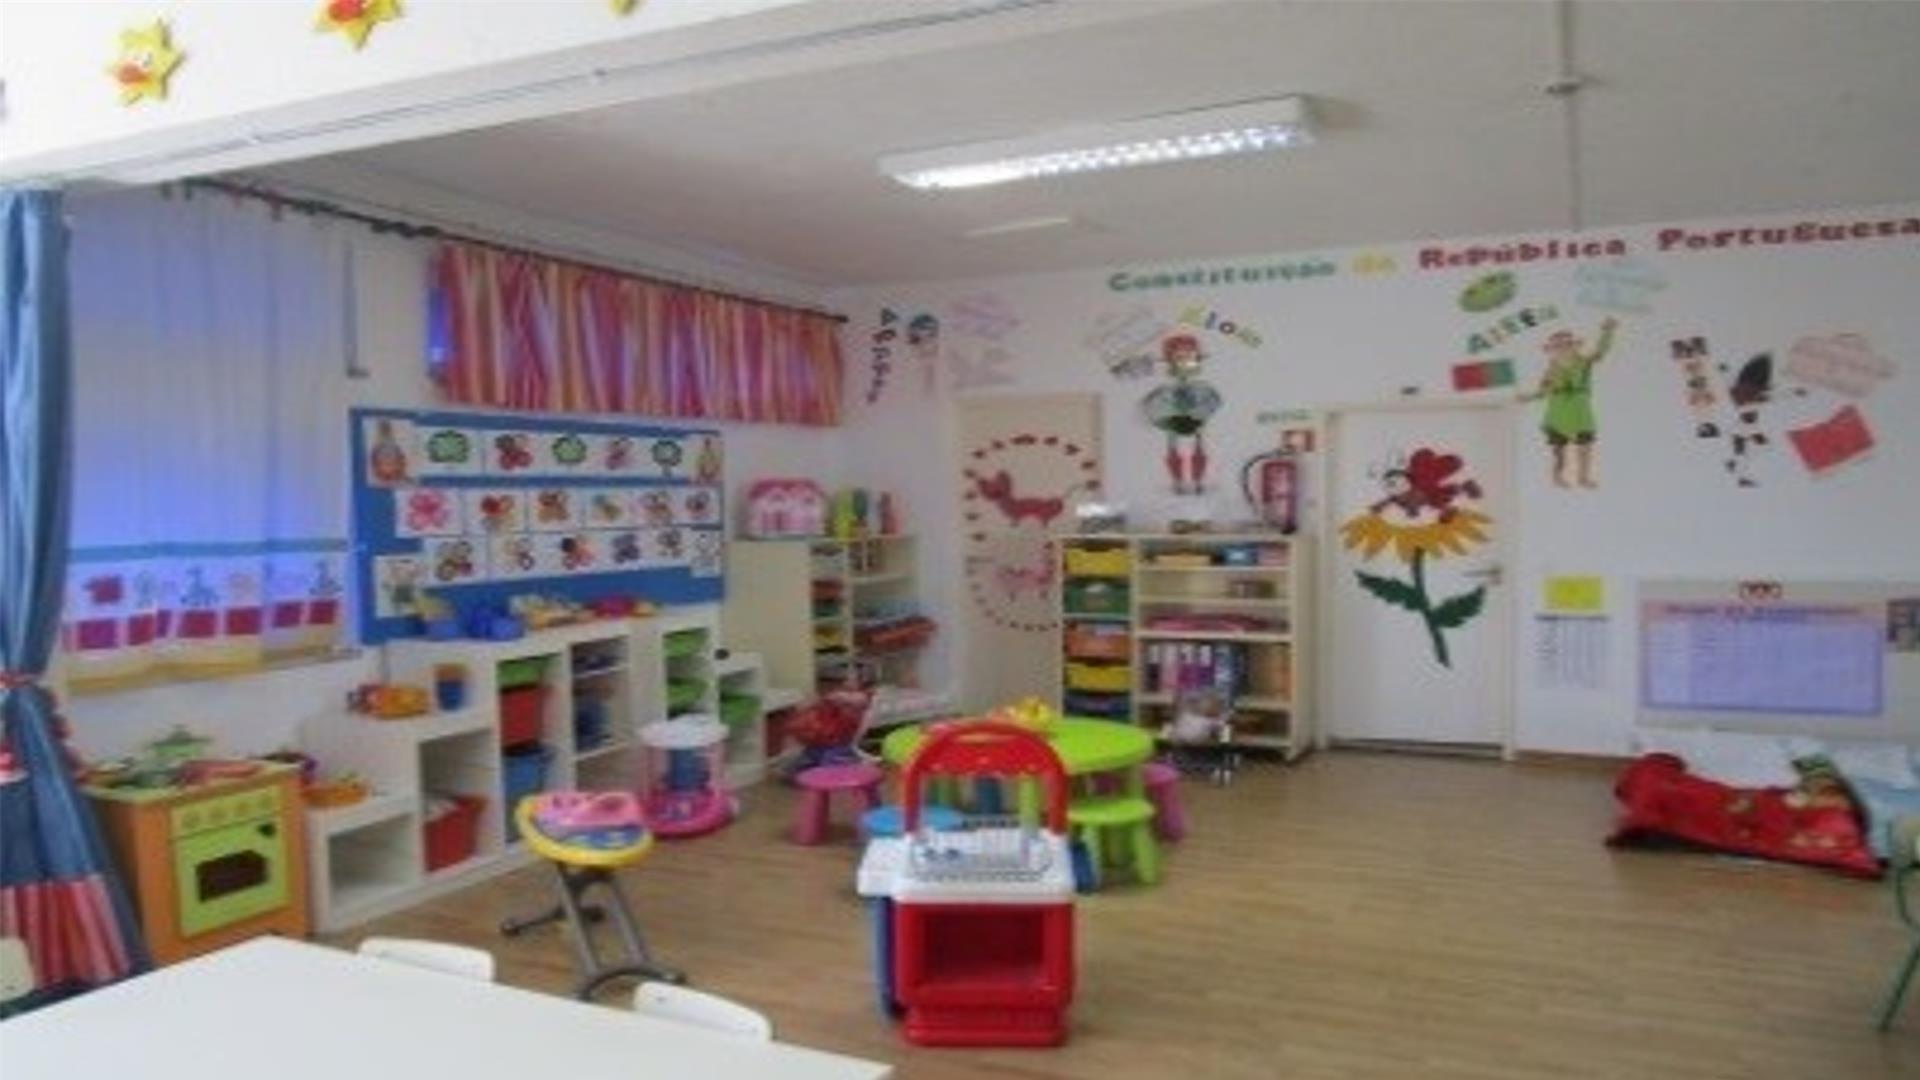 AIPICA -  Associação de Iniciativas Populares para a Infância do Concelho de Almada - Jardim Infância Bento Gonçalves